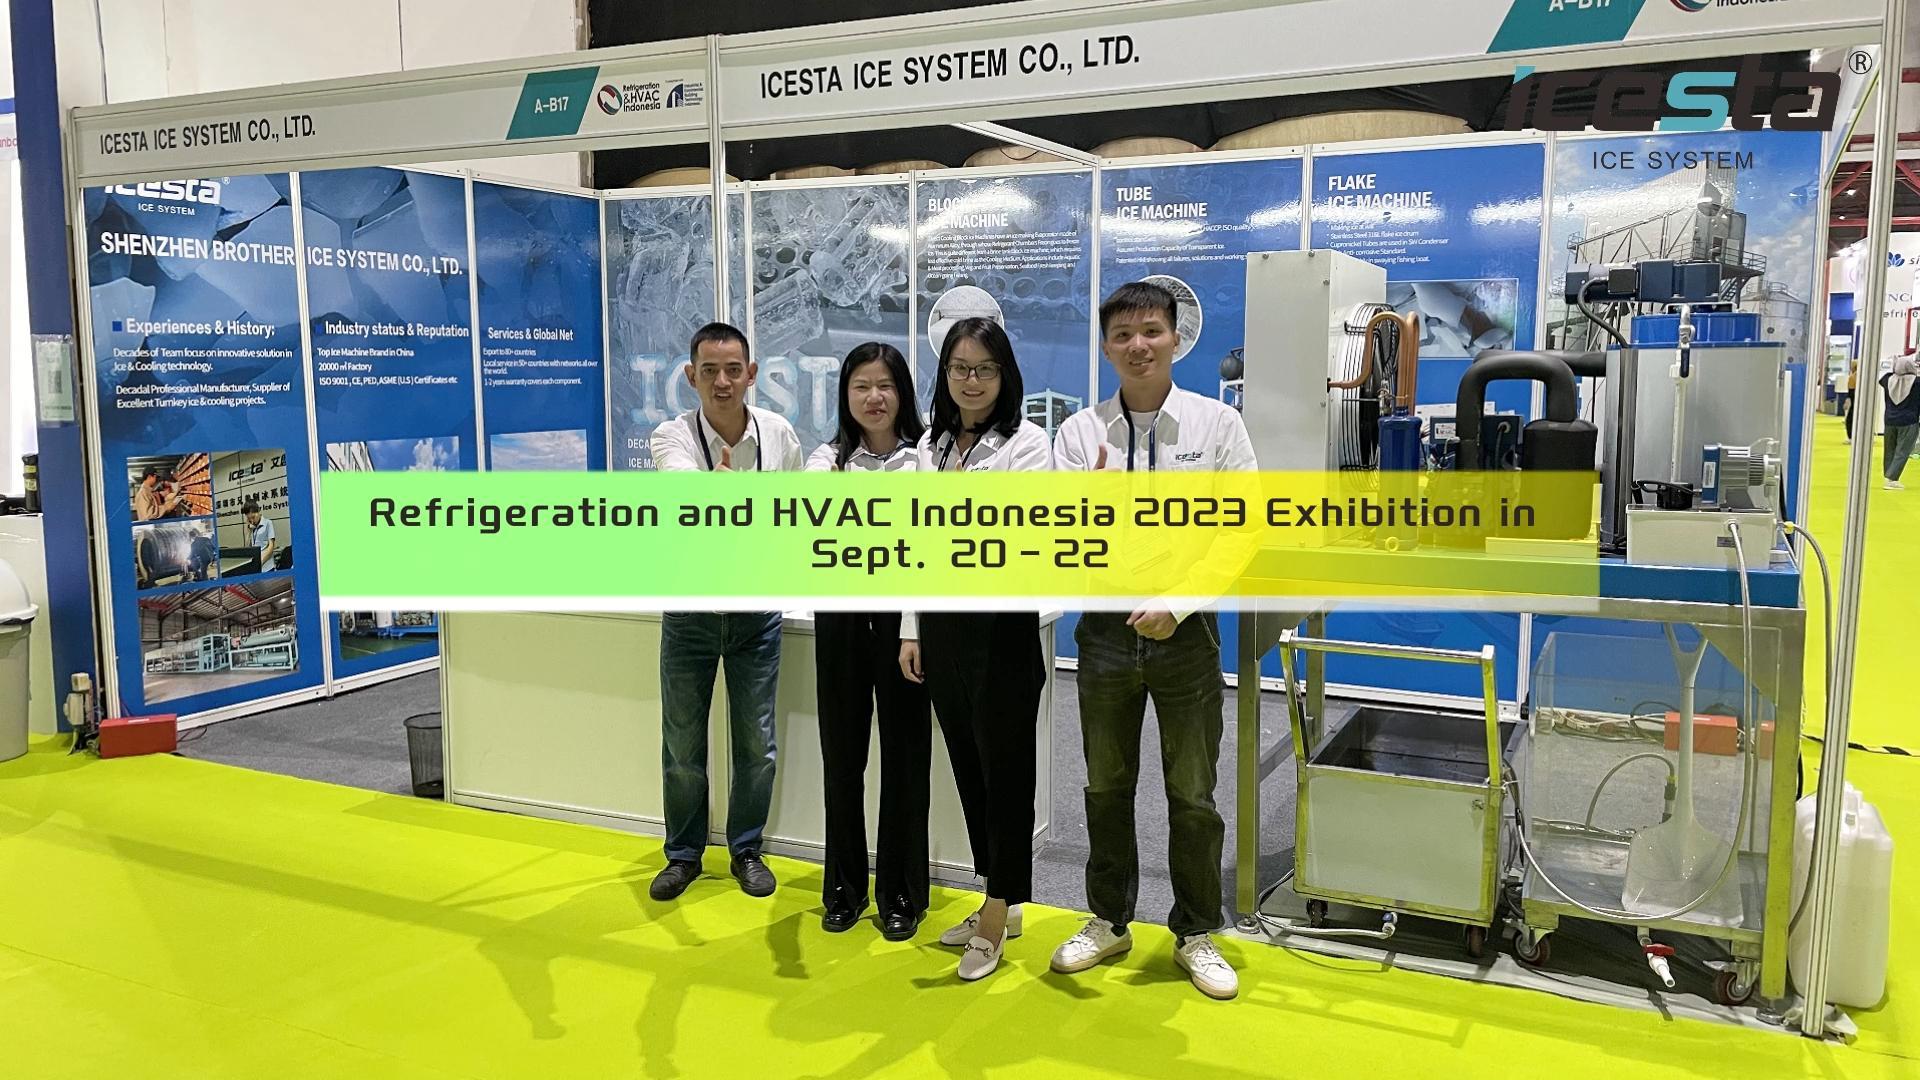 شارك فريق ICESTA بنجاح في أكبر معرض للتبريد والتكييف في إندونيسيا 2023 بأحدث ماكينة تصنيع شرائح الثلج